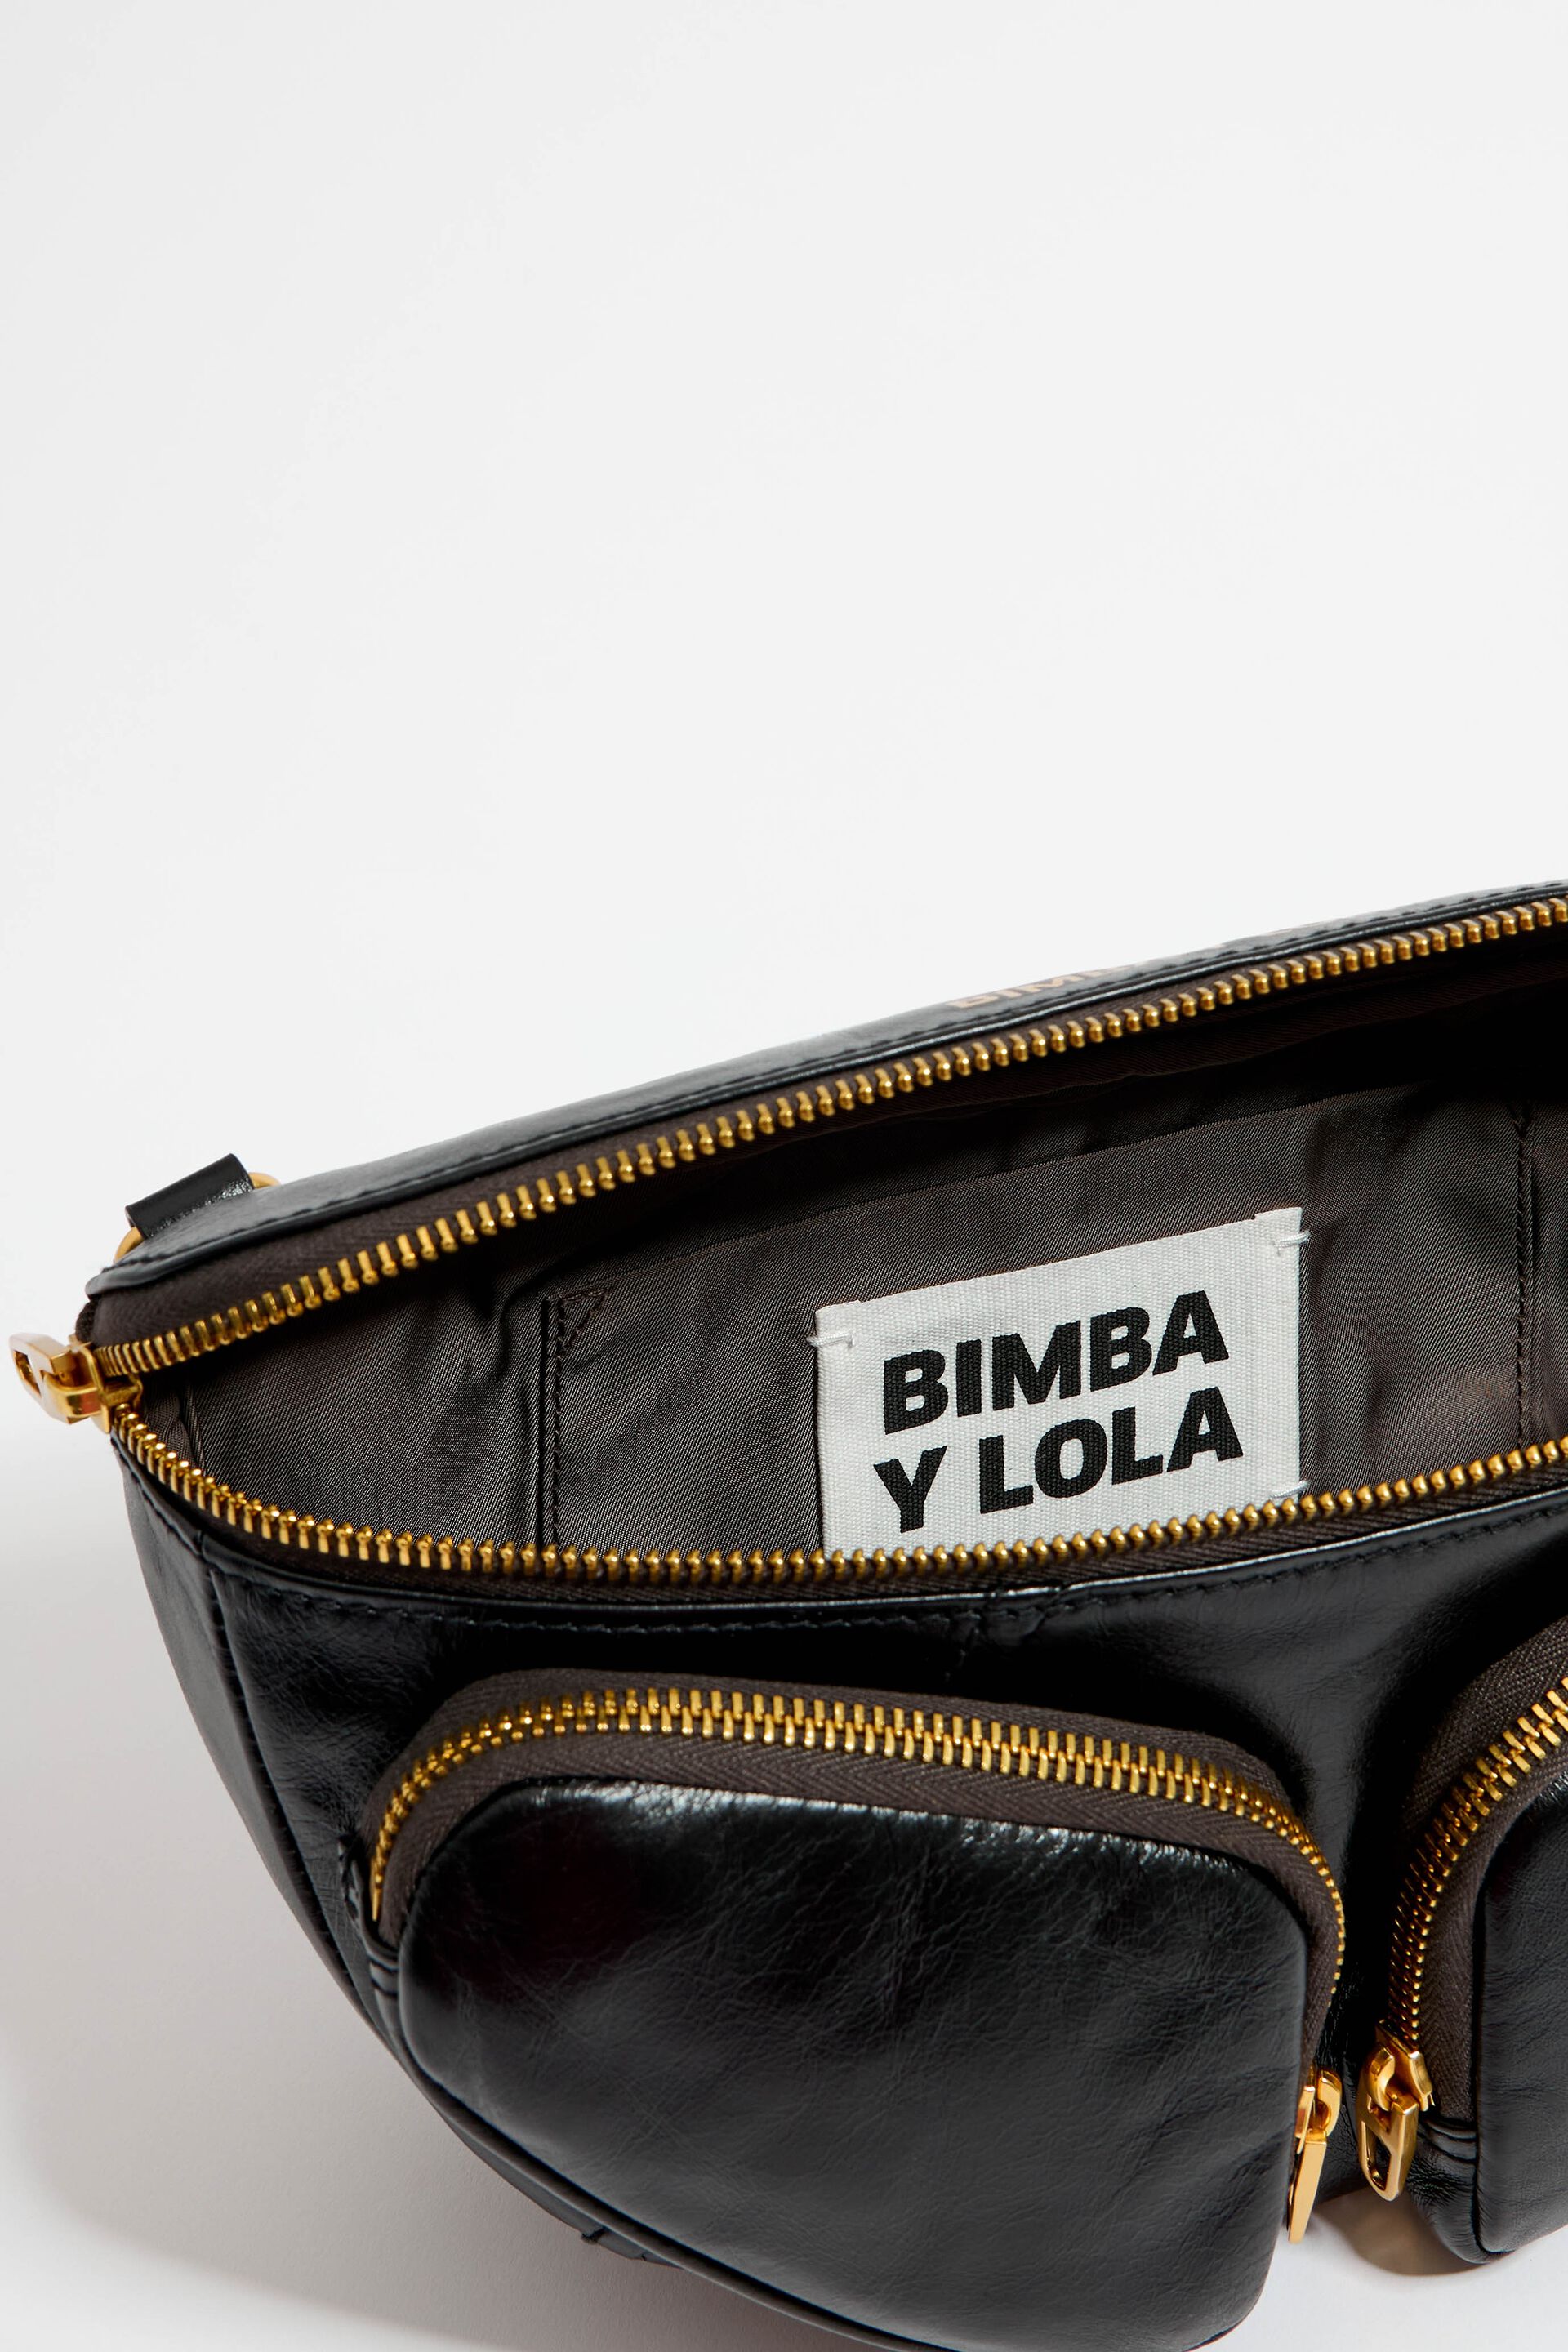 Bimba Y Lola Xs Black Leather Pocket Bumbag